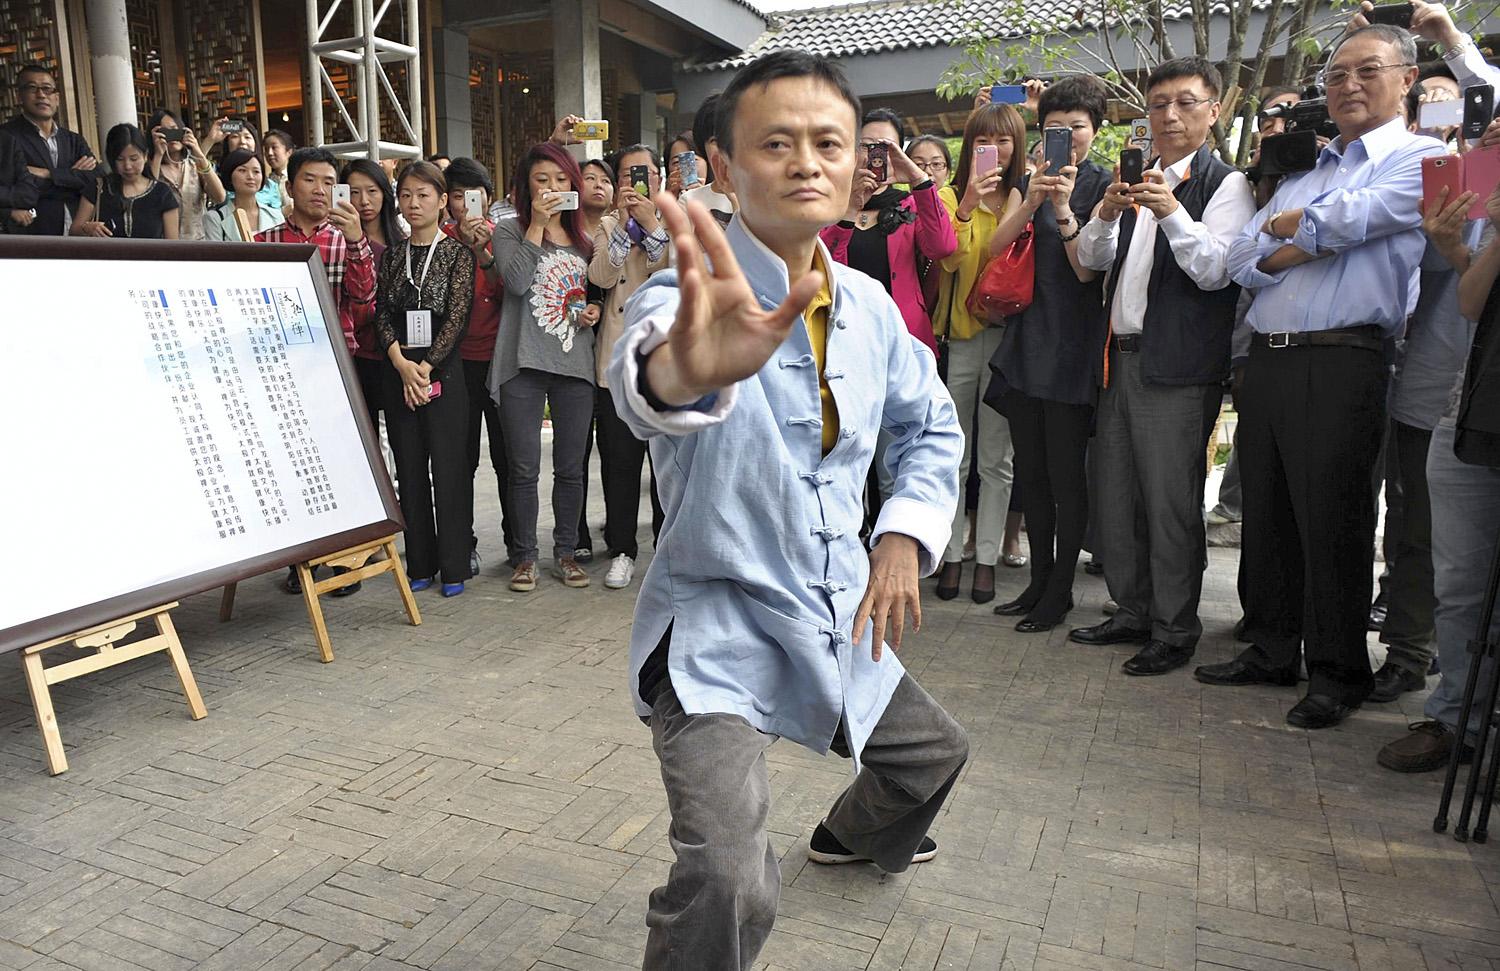 Az Alibaba megálmodója, Jack Ma tajcsi tudását csillogtatja az általa alapított iskola átadásán 